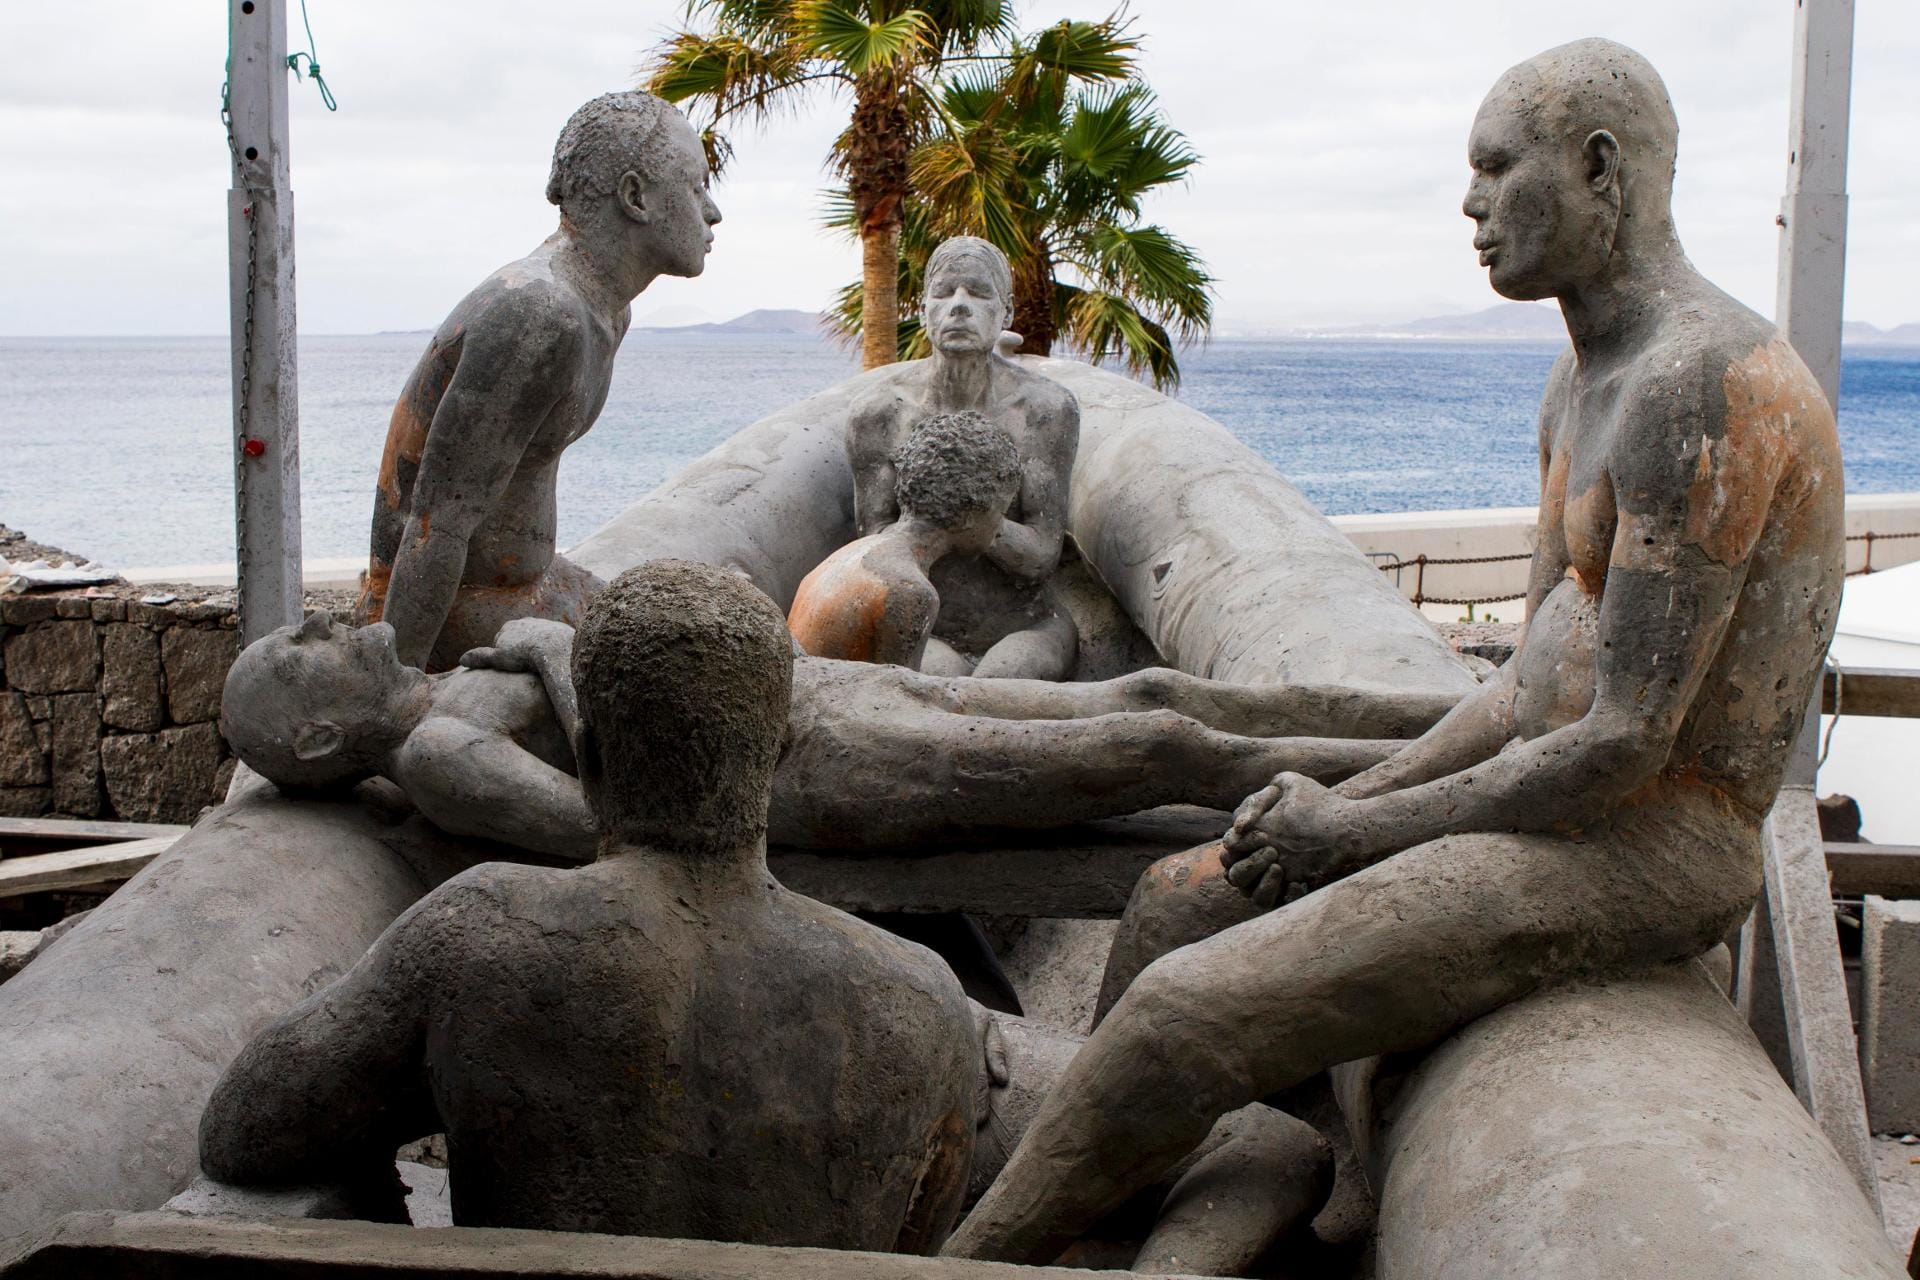 Die Figuren sind in Alltagssituationen dargestellt, greifen zum Teil aber auch sozialkritisch Themen auf. Wie die vom Künstler "Floß von Lampedusa" genannte Skulptur.